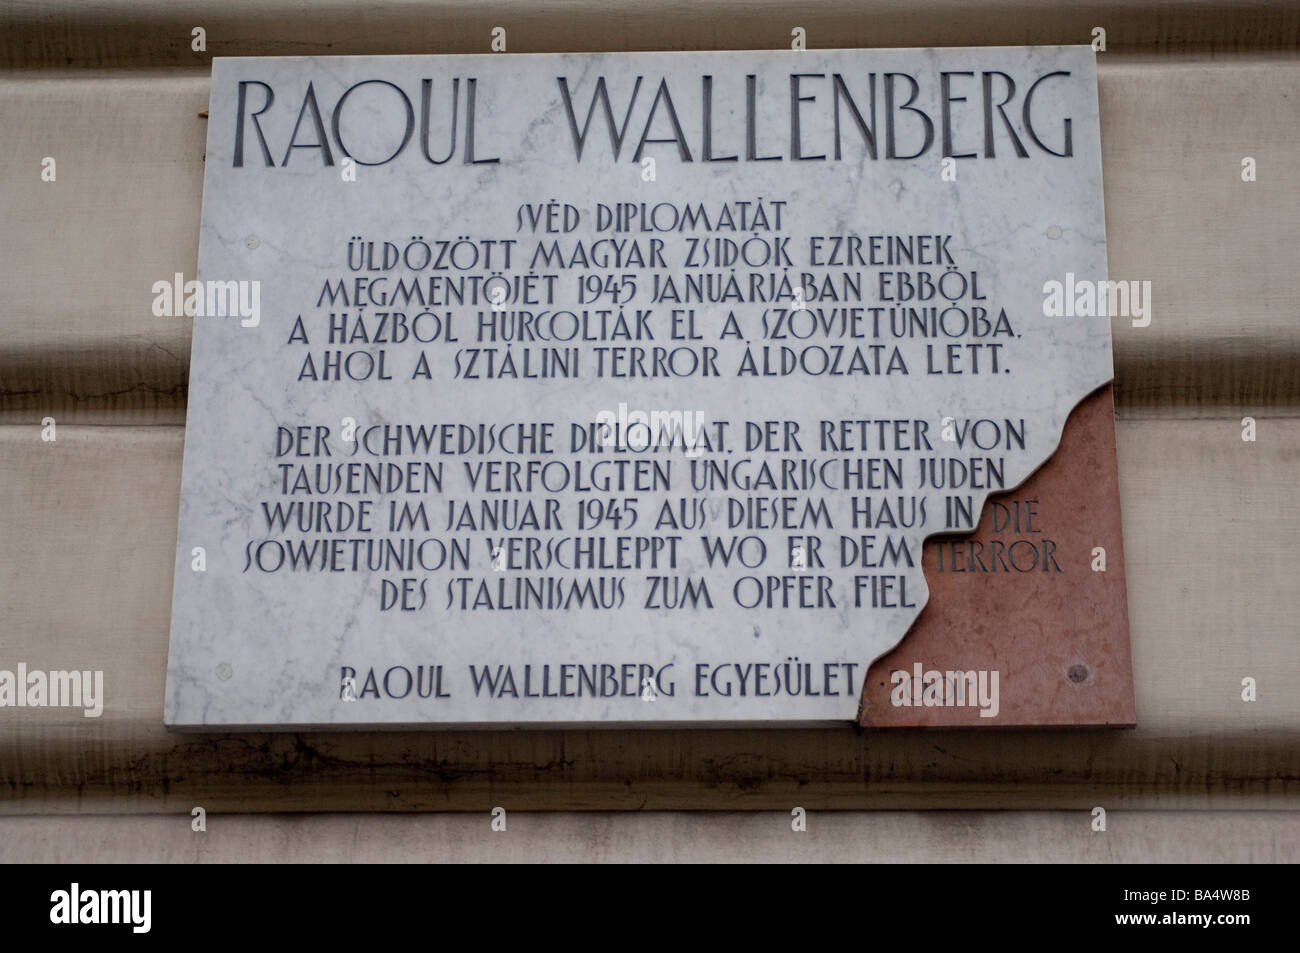 Calle signo en Budapest que cuentan la historia de un diplomático sueco Raoul Wallenberg Foto de stock